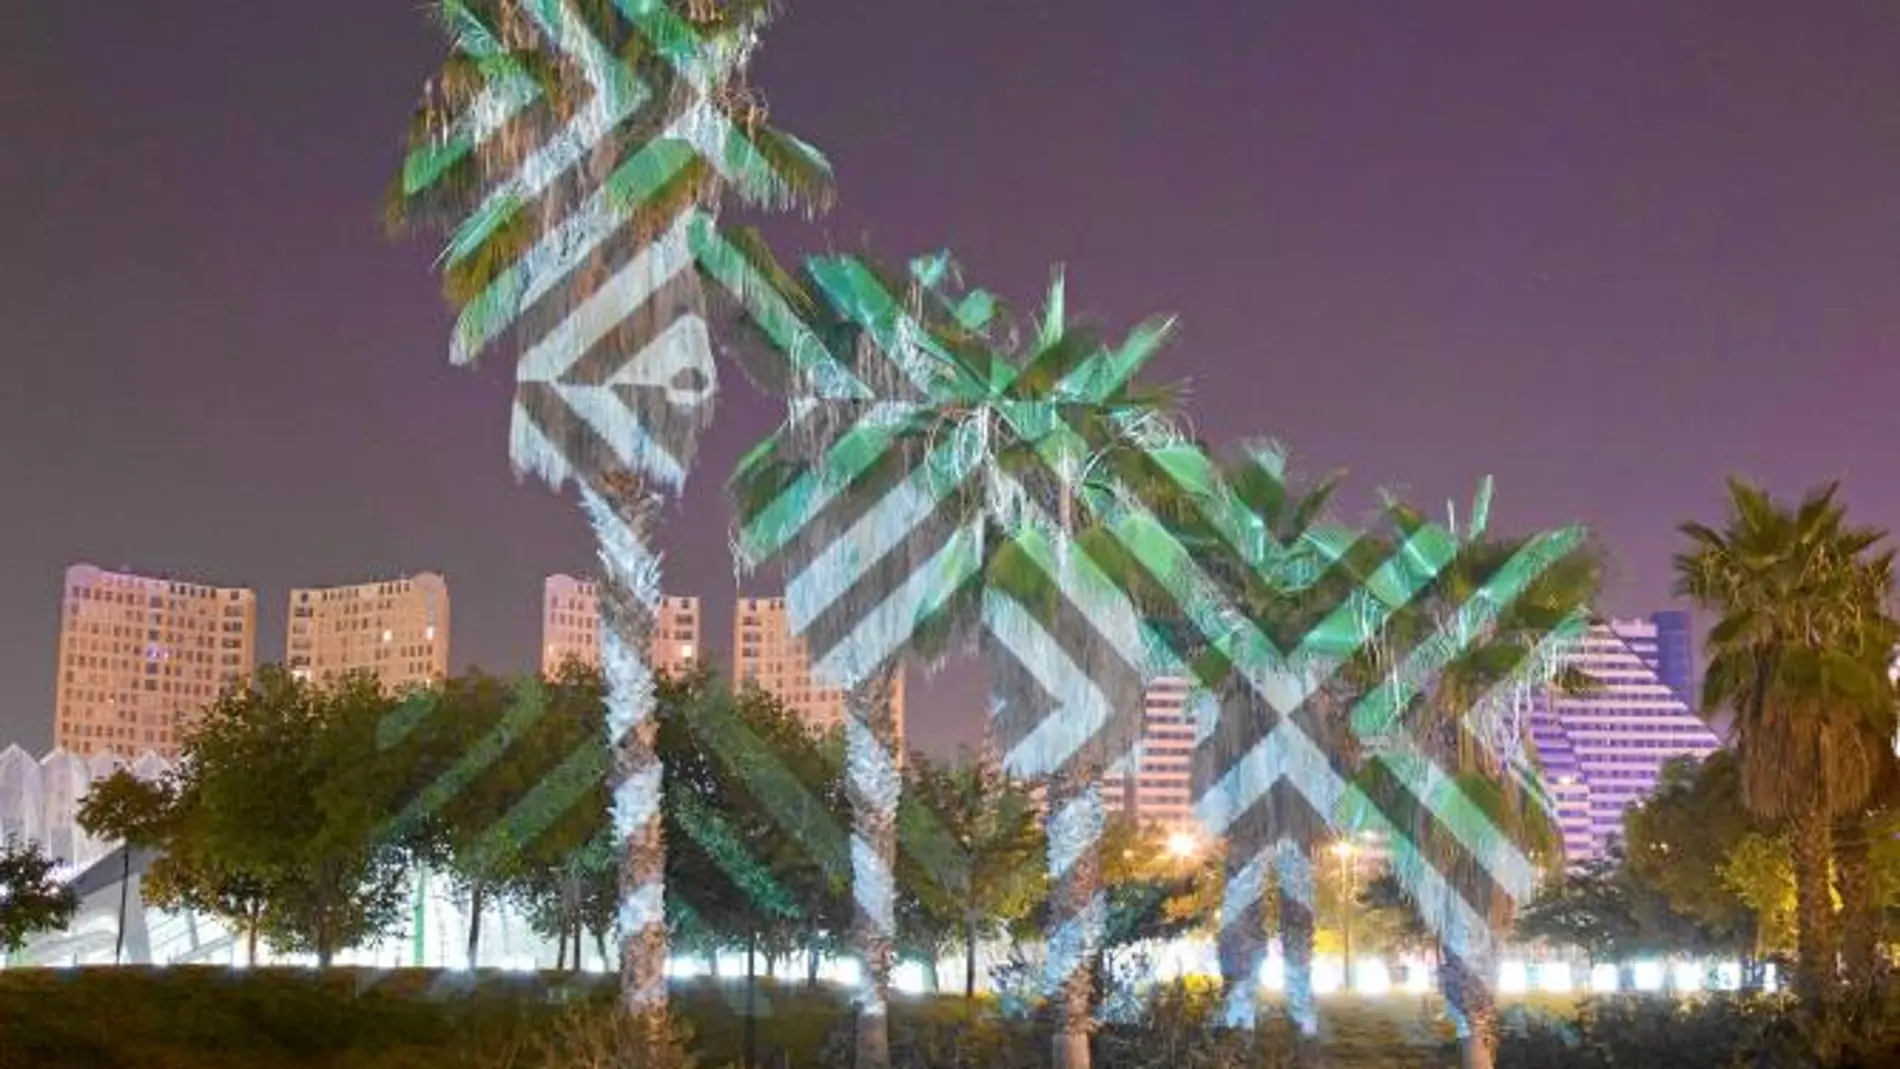 Ocho instalaciones geométricas de luz se proyectarán sobre los árboles de los Jardines del Turia de Valencia